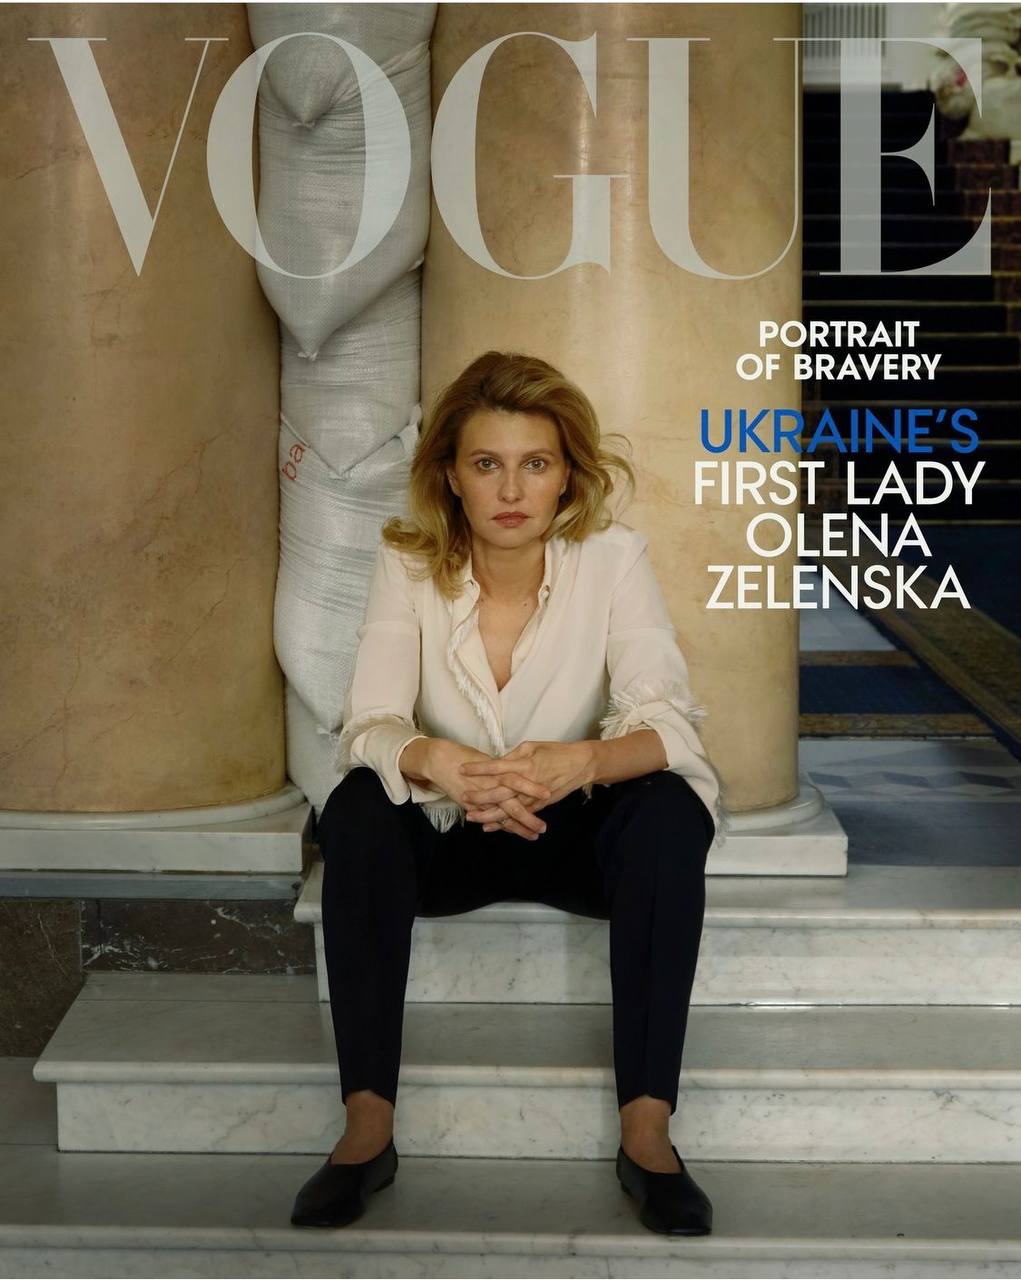 Vogue показал новую обложку с Еленой Зеленской и фото президентских супругов - фото 2